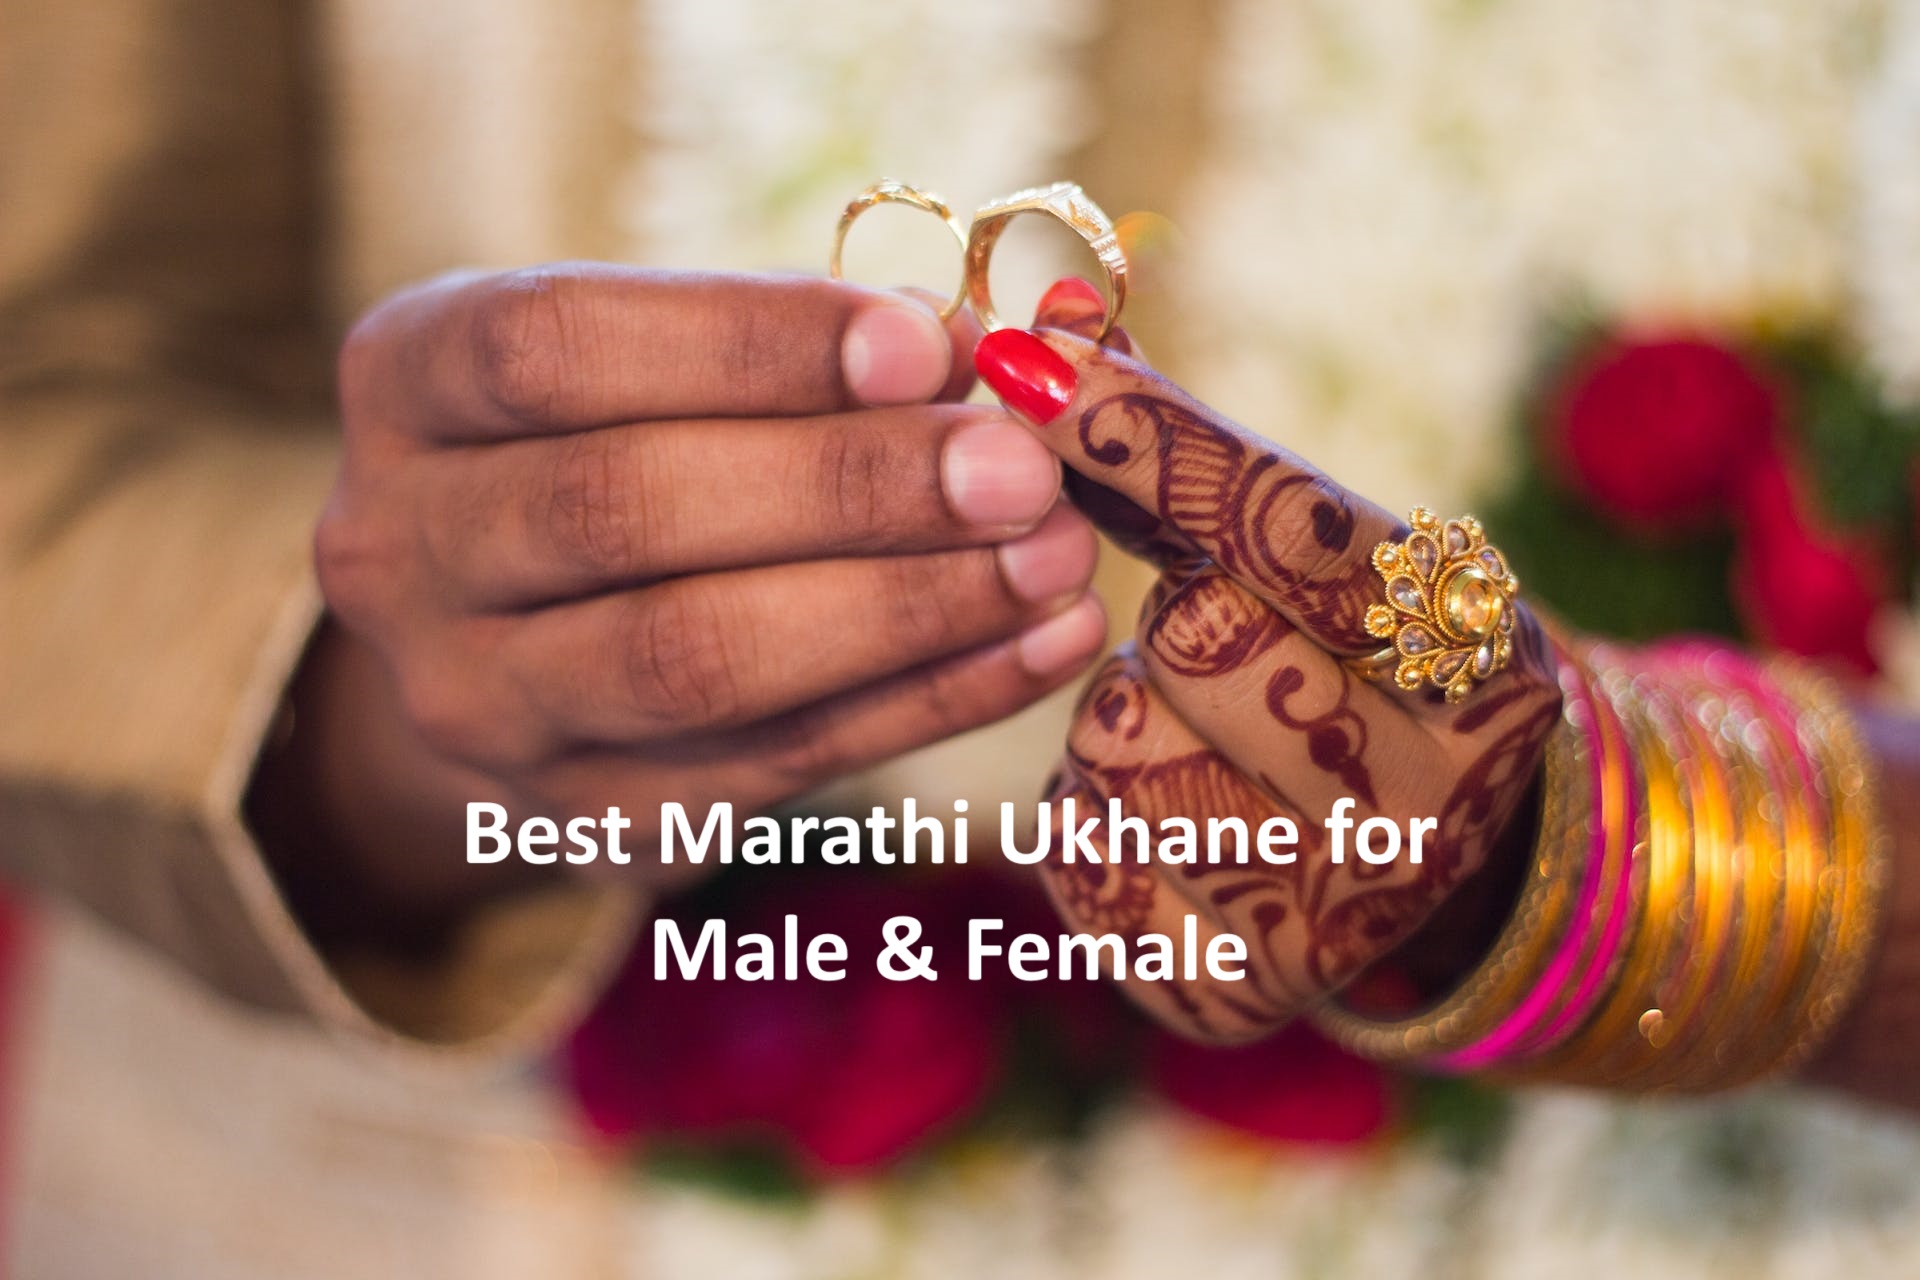 Marathi Ukhane for male funny